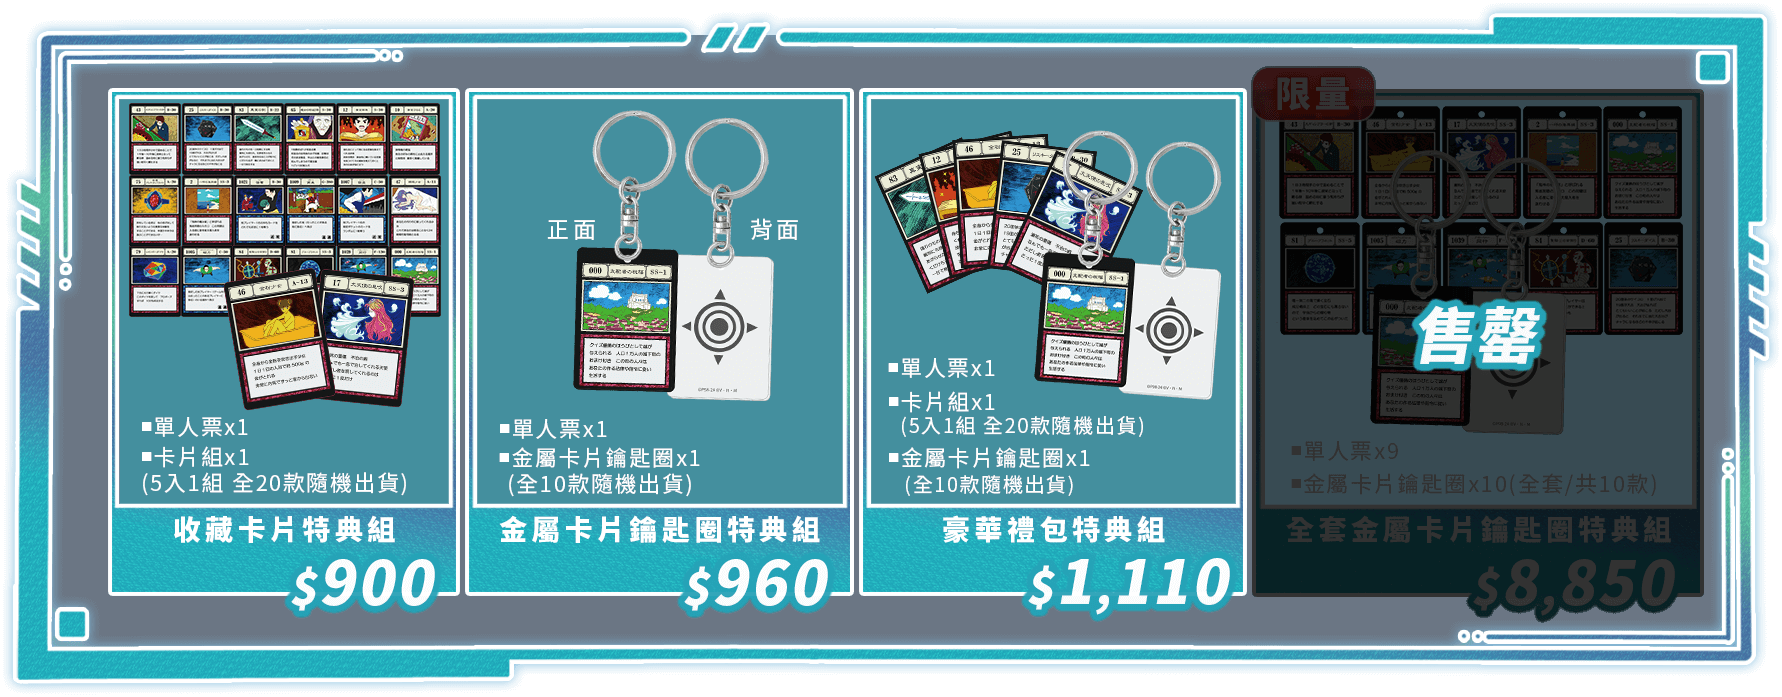 口袋售票系統-獵人實境解謎遊戲－貪婪之島篇-P5-限量特典組